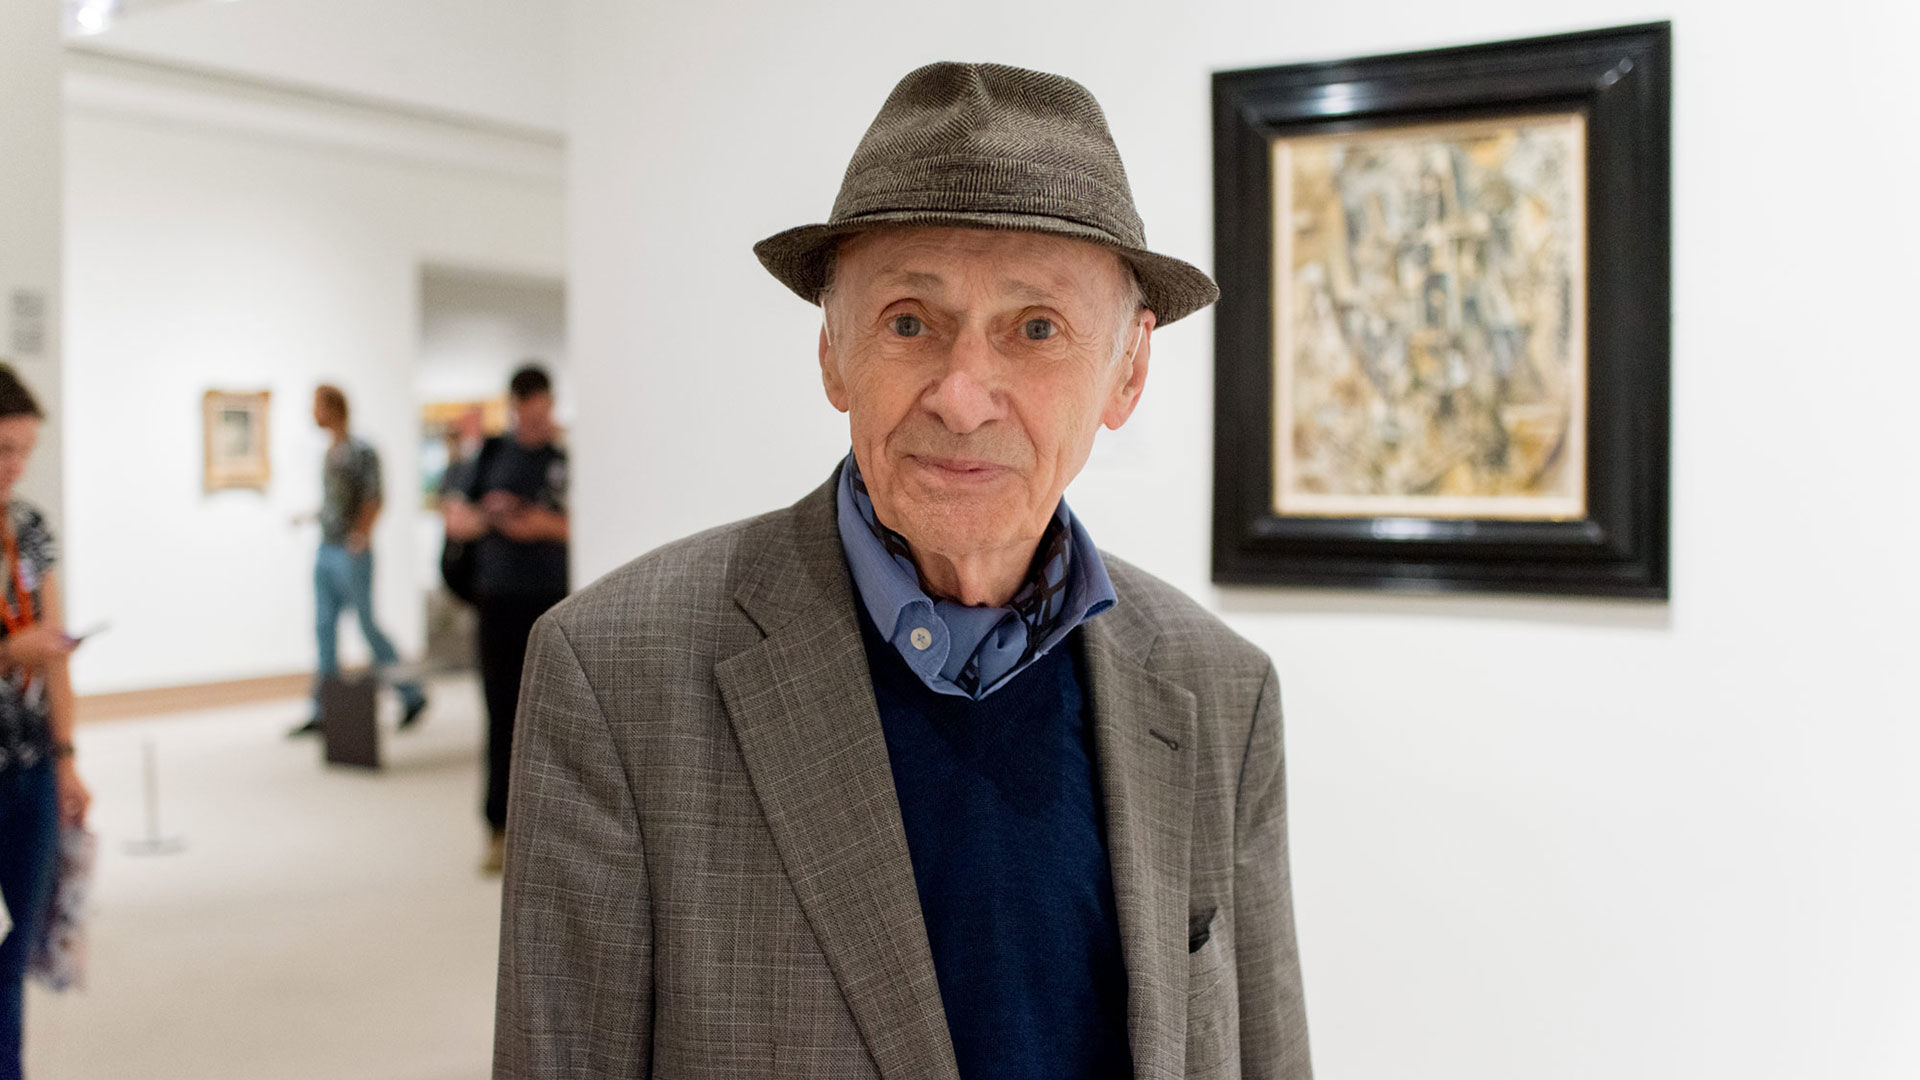 Jacques Villeglé on Georges Braque and Pablo Picasso